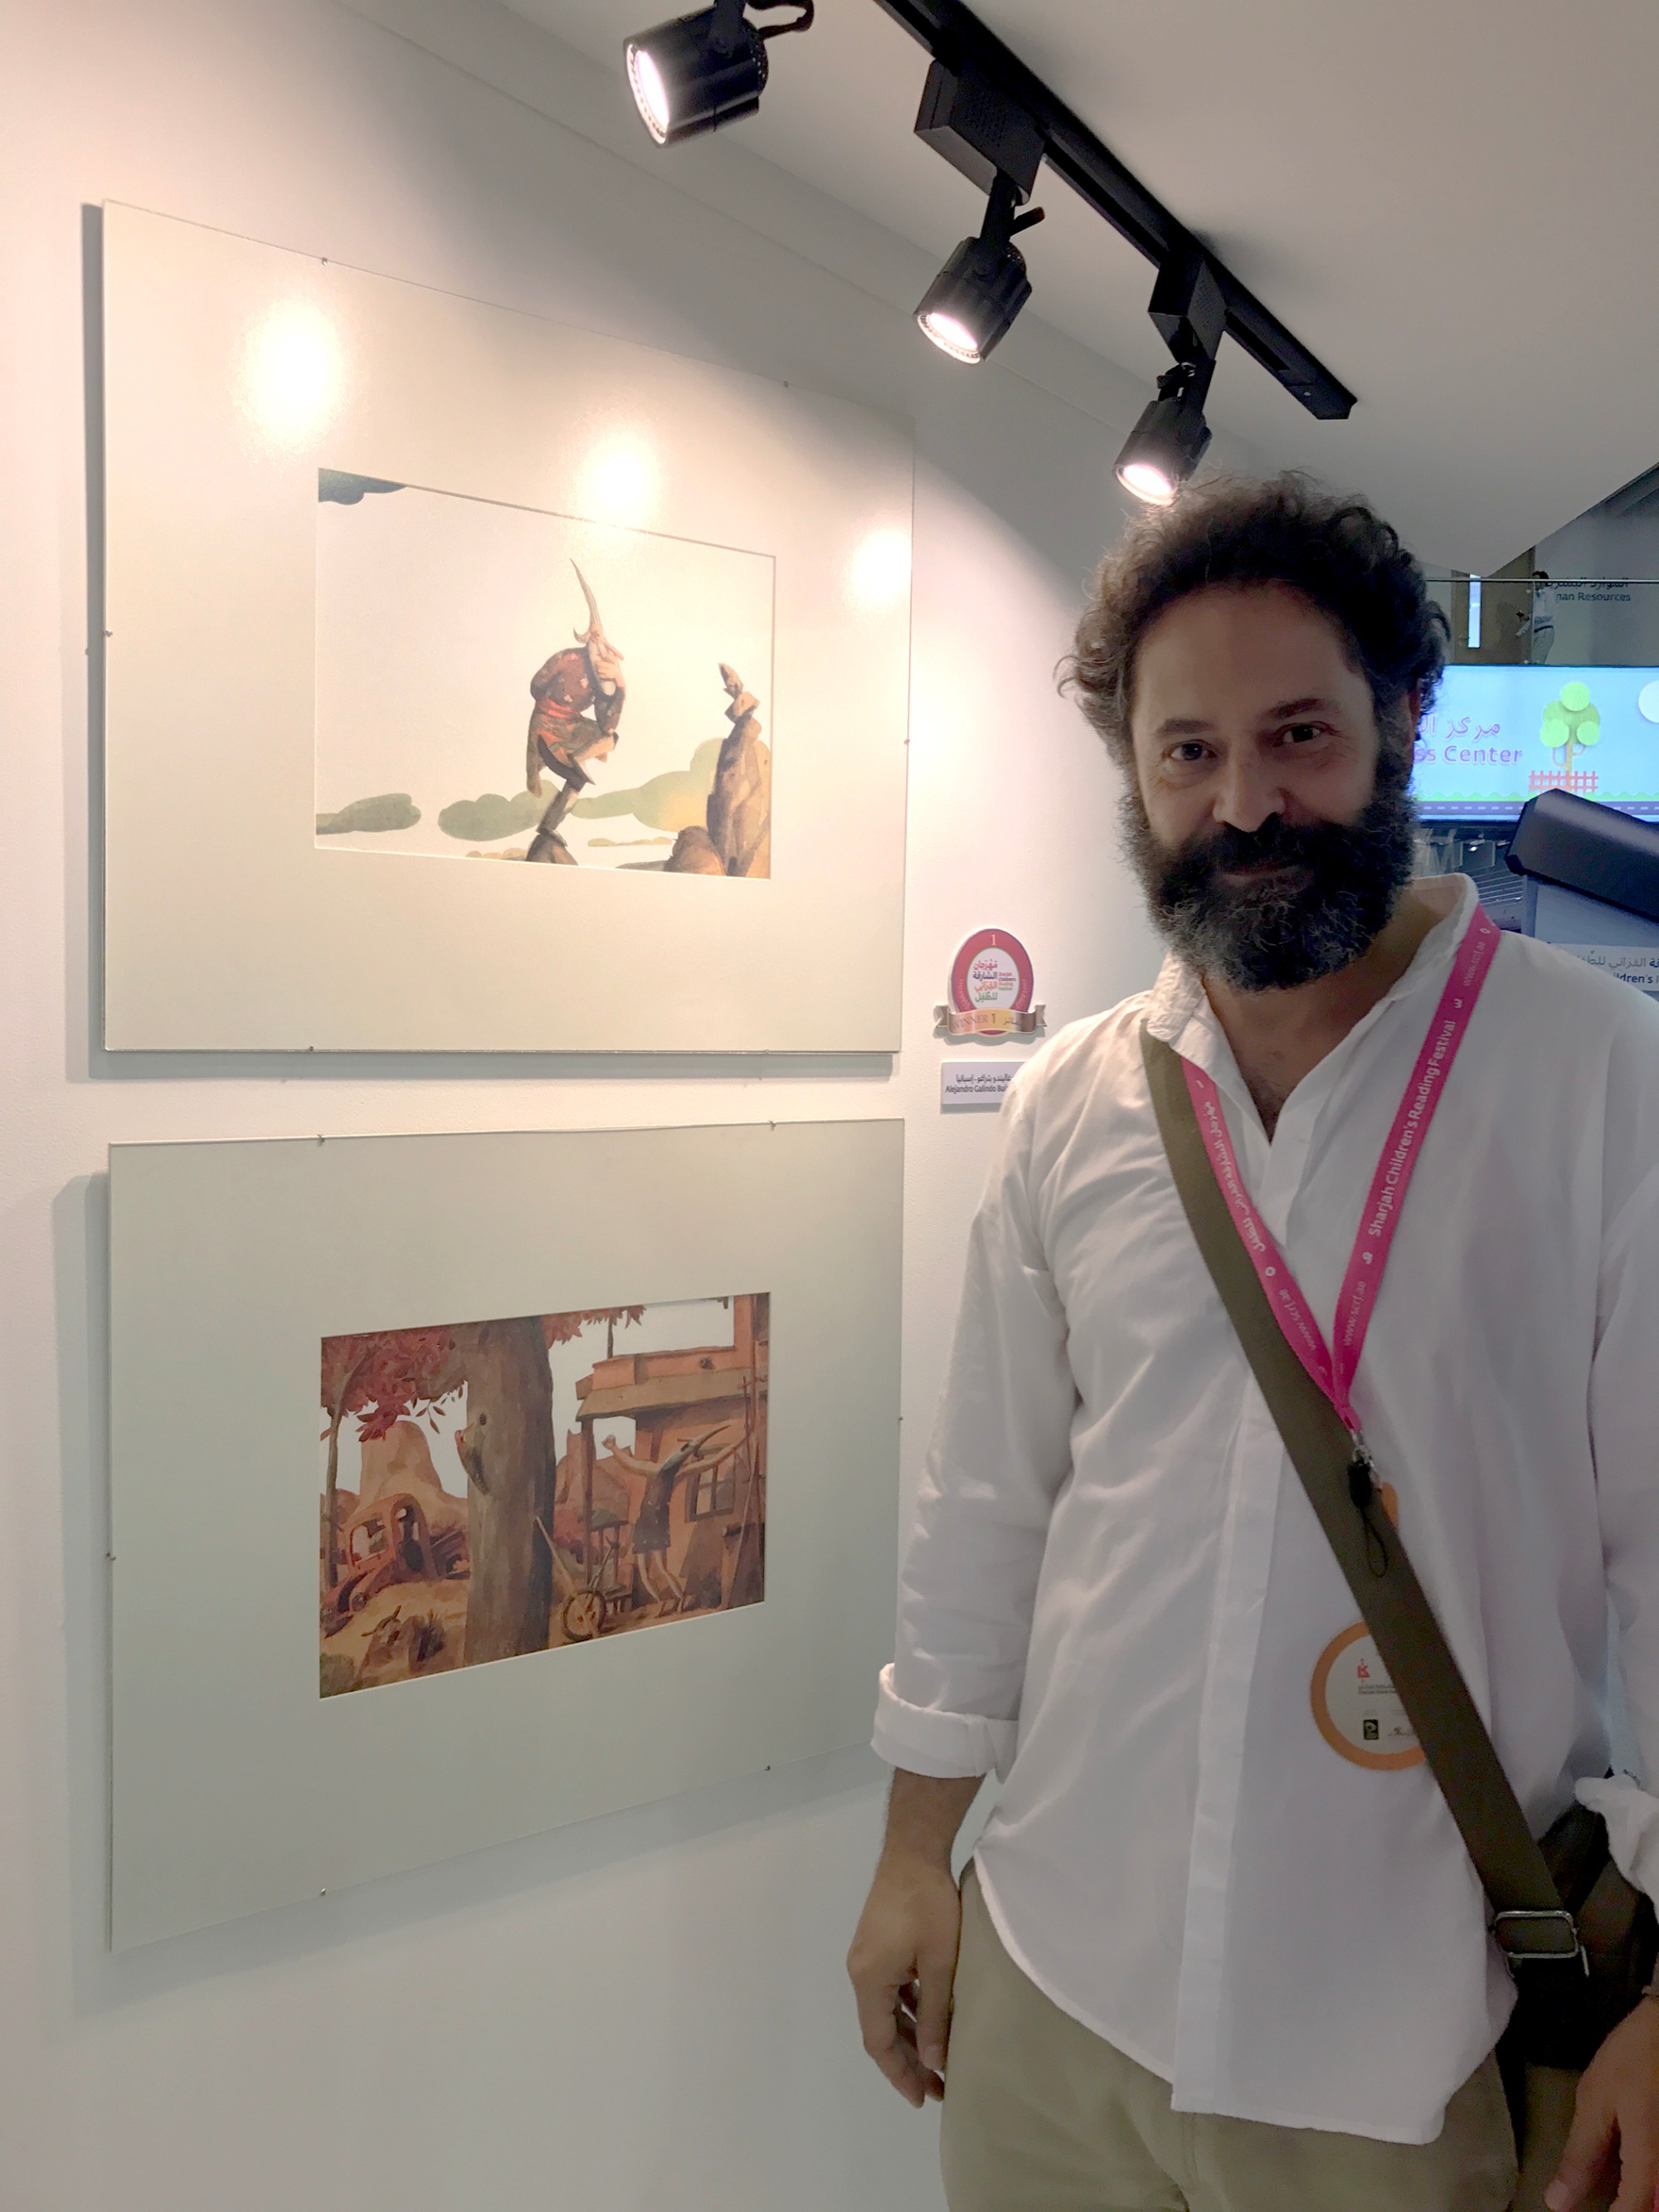 الاسباني أليخاندرو غاليندو بيدراغو بجانب لوحاته الفائزة بالمركز الأول في معرض الشارقة لرسوم كتب الطفل 2017  